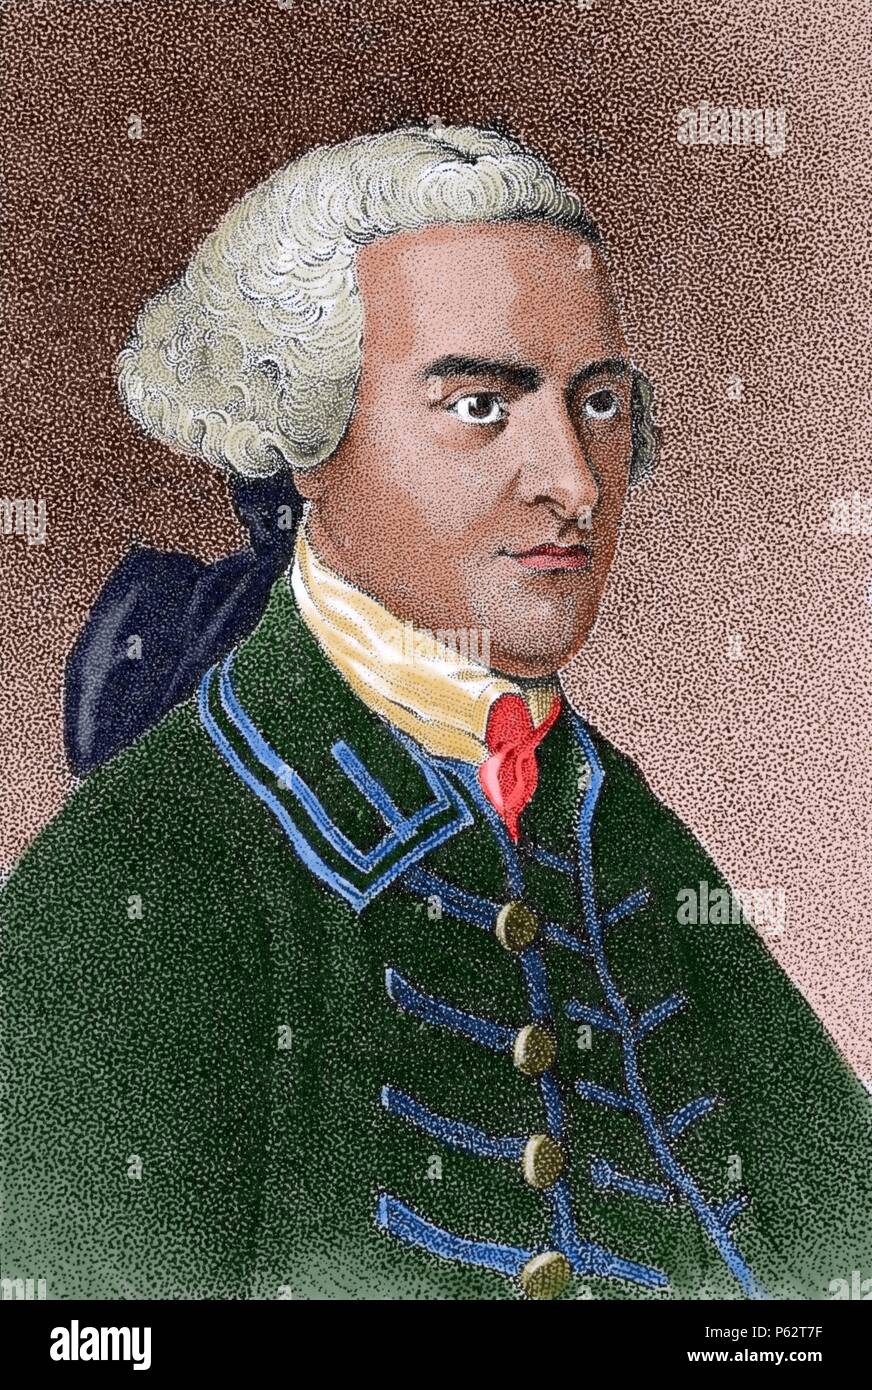 John Hancock (1737-1793). War Kaufmann, Staatsmann, und prominenten Patriot der Amerikanischen Revolution. Er diente als Präsident der Zweite Kontinentale Kongress und war der erste und der dritte Gouverneur des Commonwealth von Massachusetts. Kupferstich von Copley. Die amerikanische Revolution. Gefärbt. Stockfoto